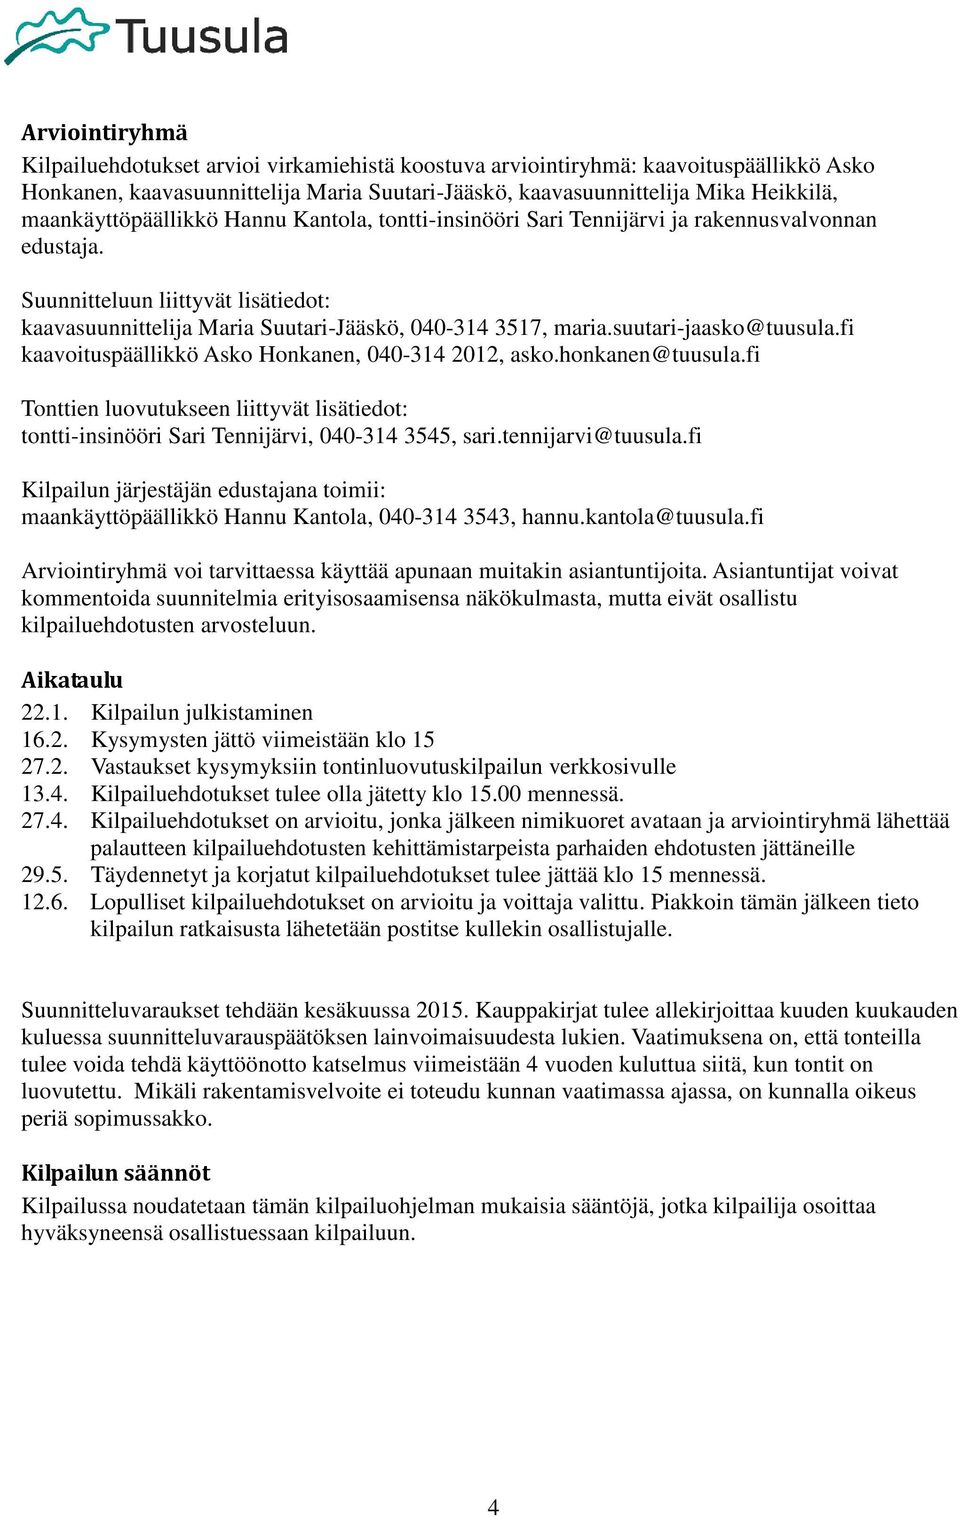 suutari-jaasko@tuusula.fi kaavoituspäällikkö Asko Honkanen, 040-314 2012, asko.honkanen@tuusula.fi Tonttien luovutukseen liittyvät lisätiedot: tontti-insinööri Sari Tennijärvi, 040-314 3545, sari.